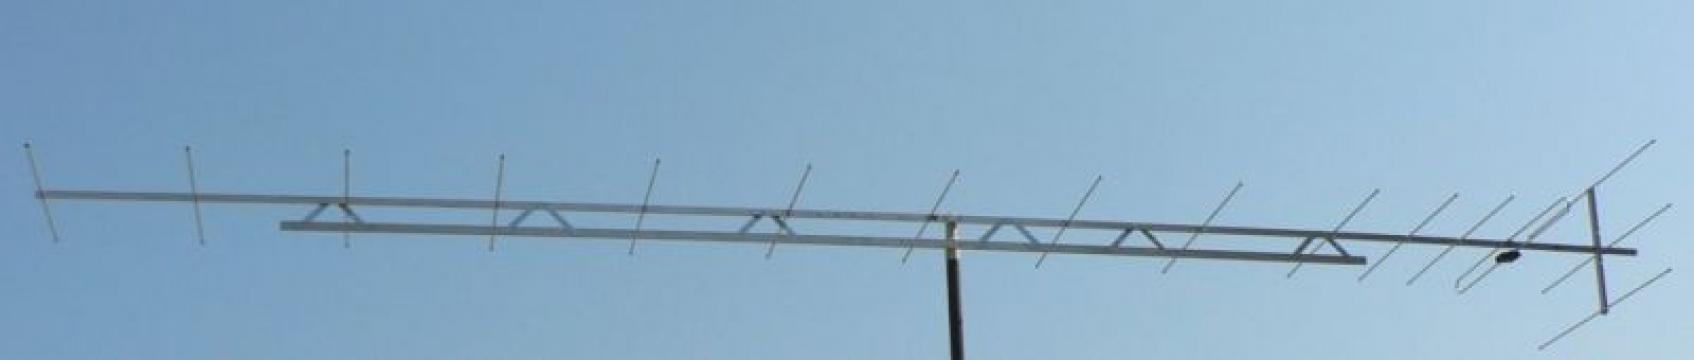 Antena pentru amplificare semnal 144-146 Mhz/2m 16dbi de la SC Traiect SRL